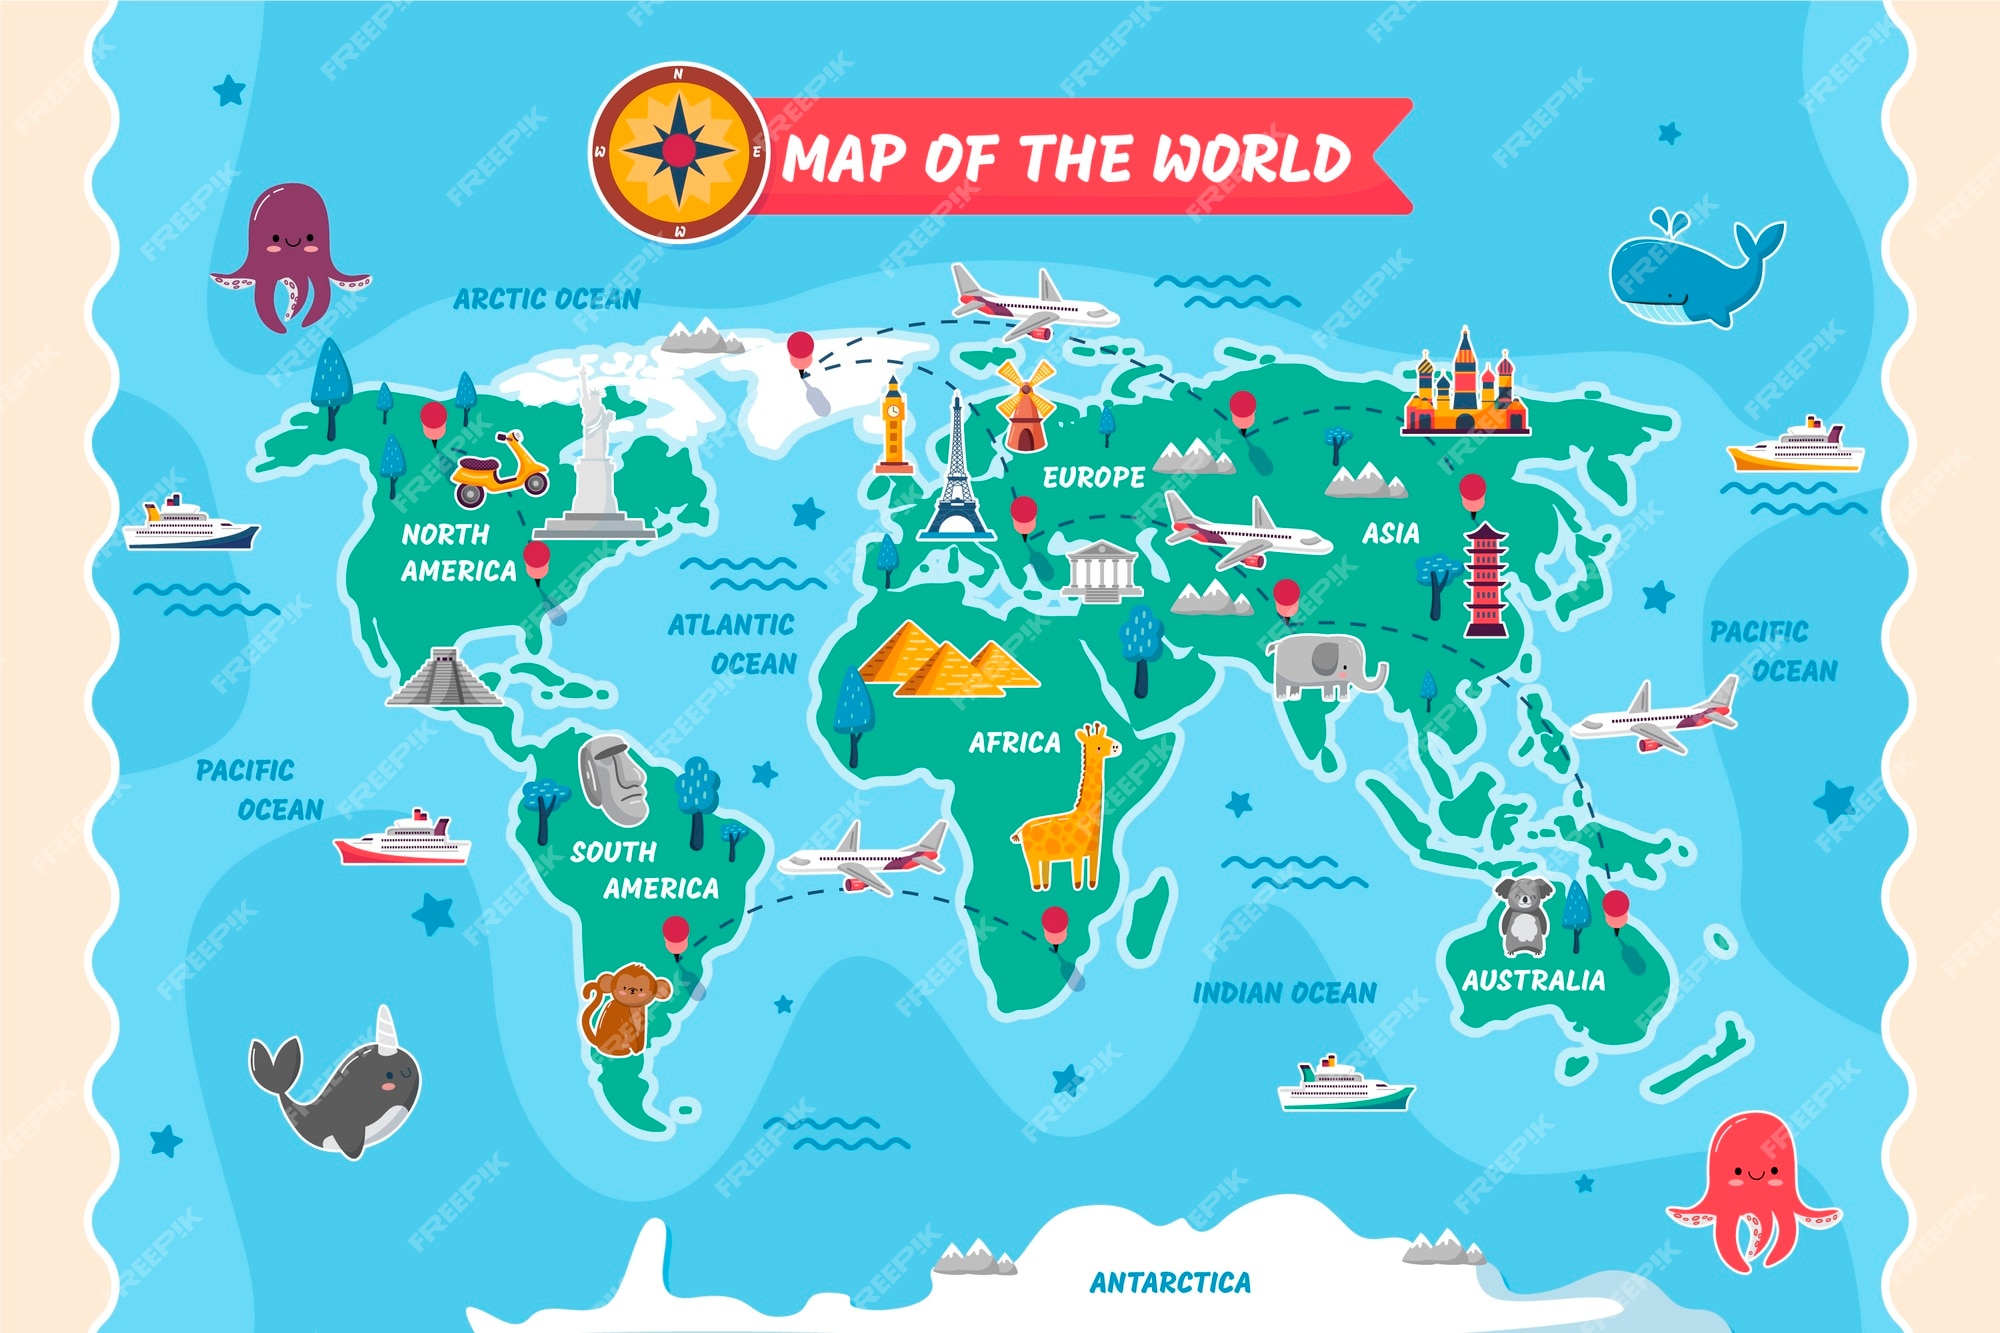 Kids World Map Images - Free Download On Freepik